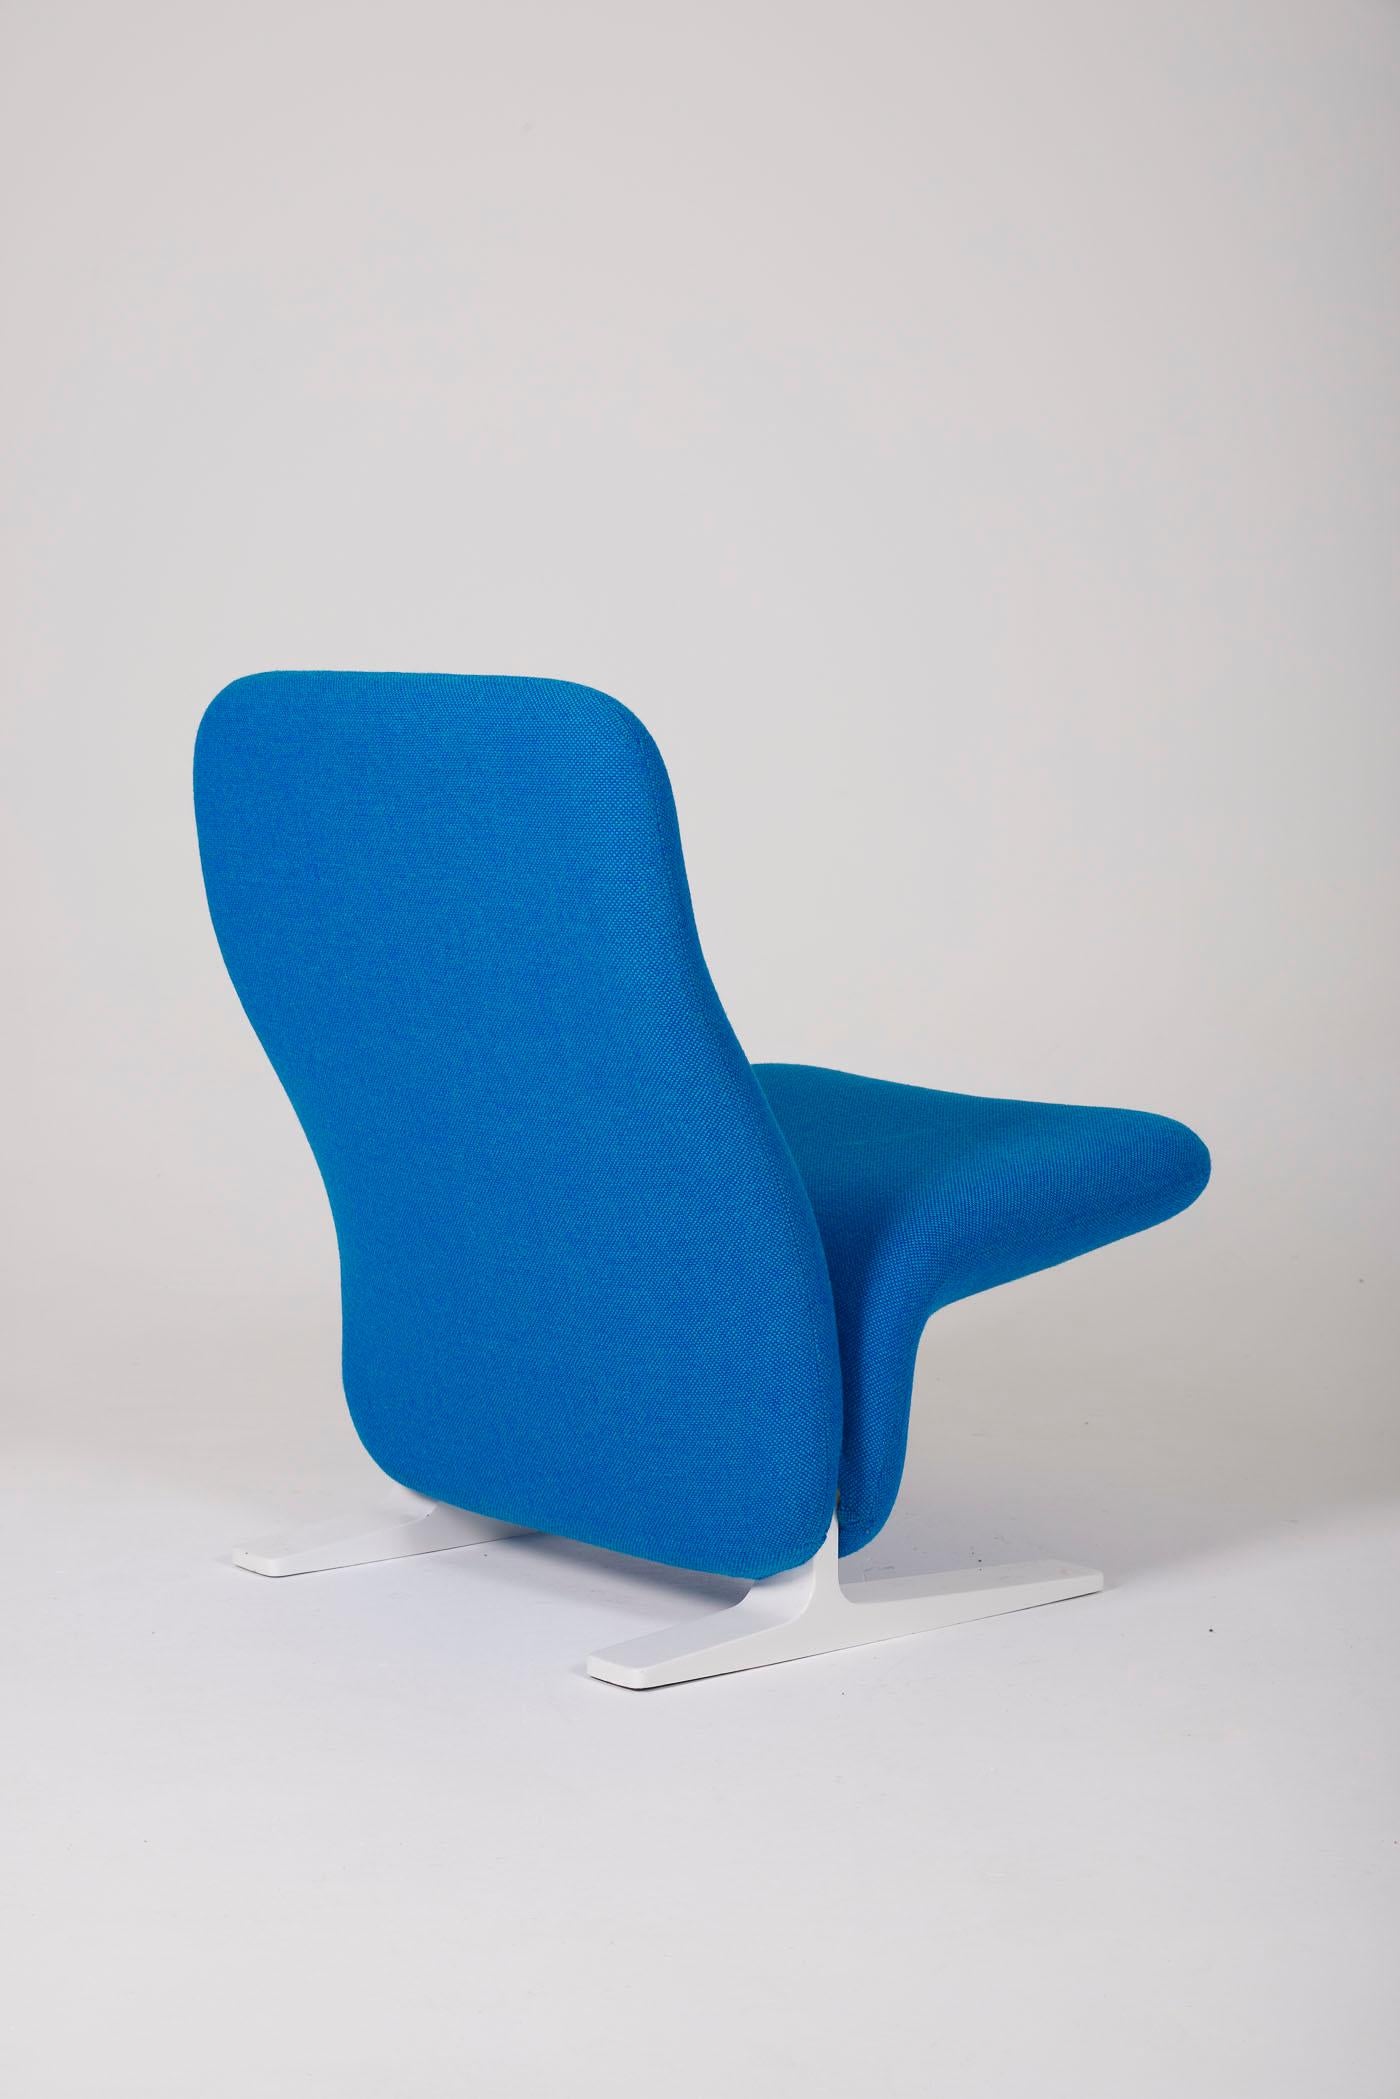 Pierre Paulin F780 armchair For Sale 2